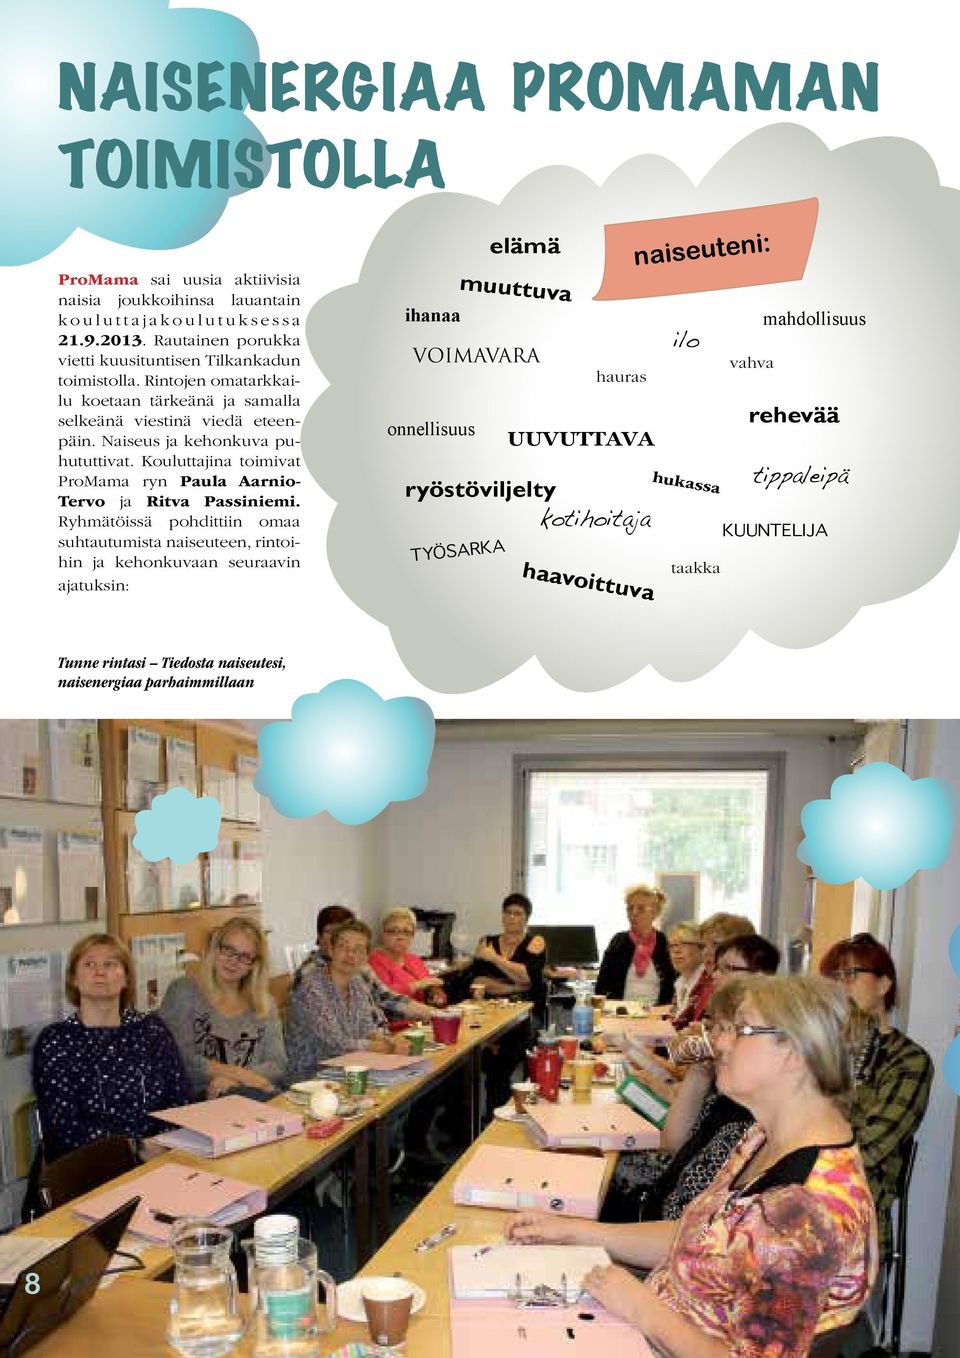 Kouluttajina toimivat ProMama ryn Paula Aarnio- Tervo ja Ritva Passiniemi.